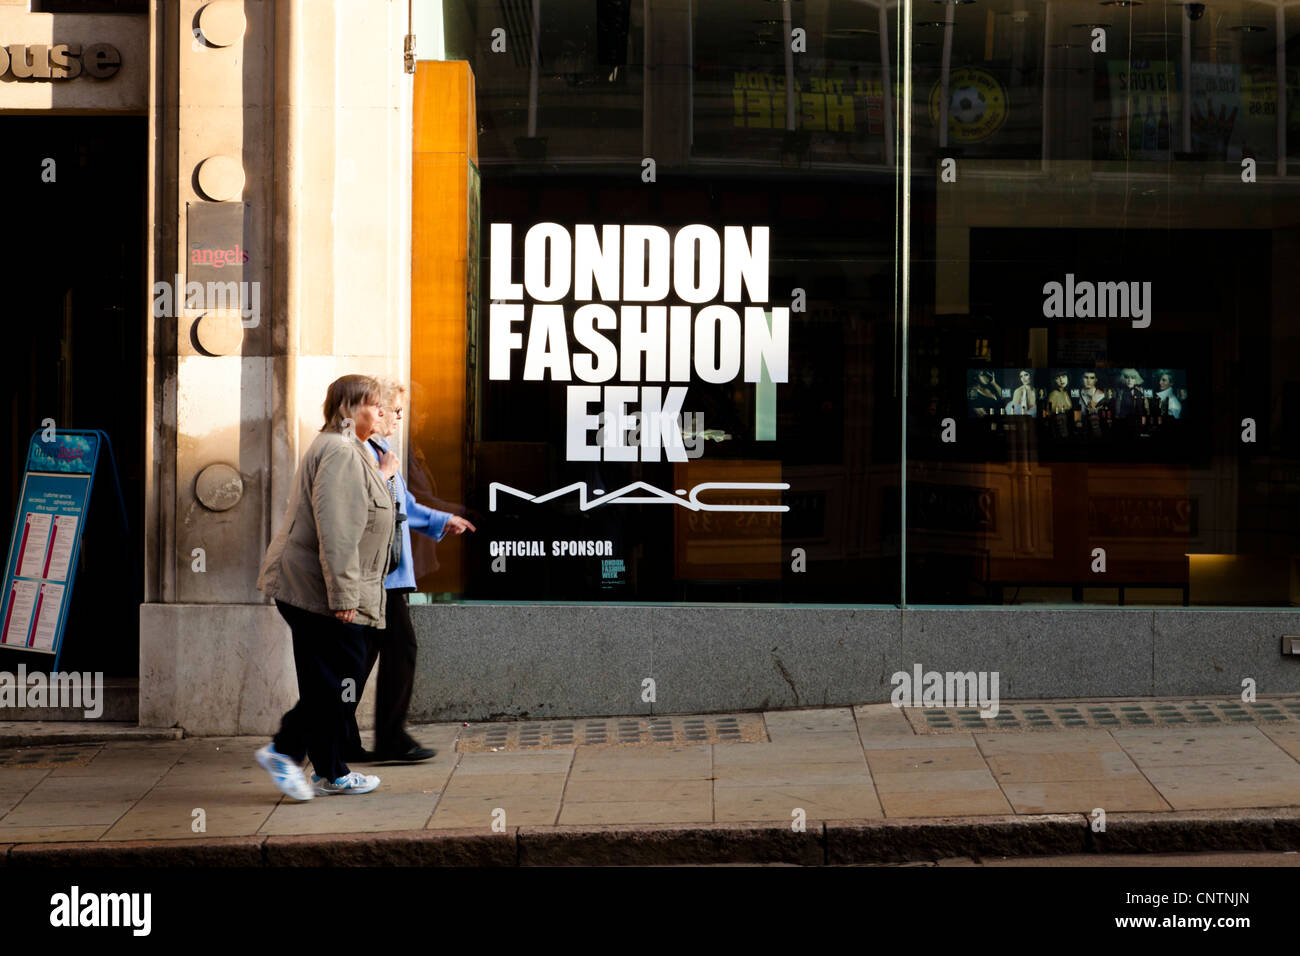 En raison de l'orthographe lettre perdue. Vue humoristique de la Semaine de la mode de Londres boutique fenêtre avec deux femmes shoppers et plusieurs modèles sur un écran de télévision, UK Banque D'Images